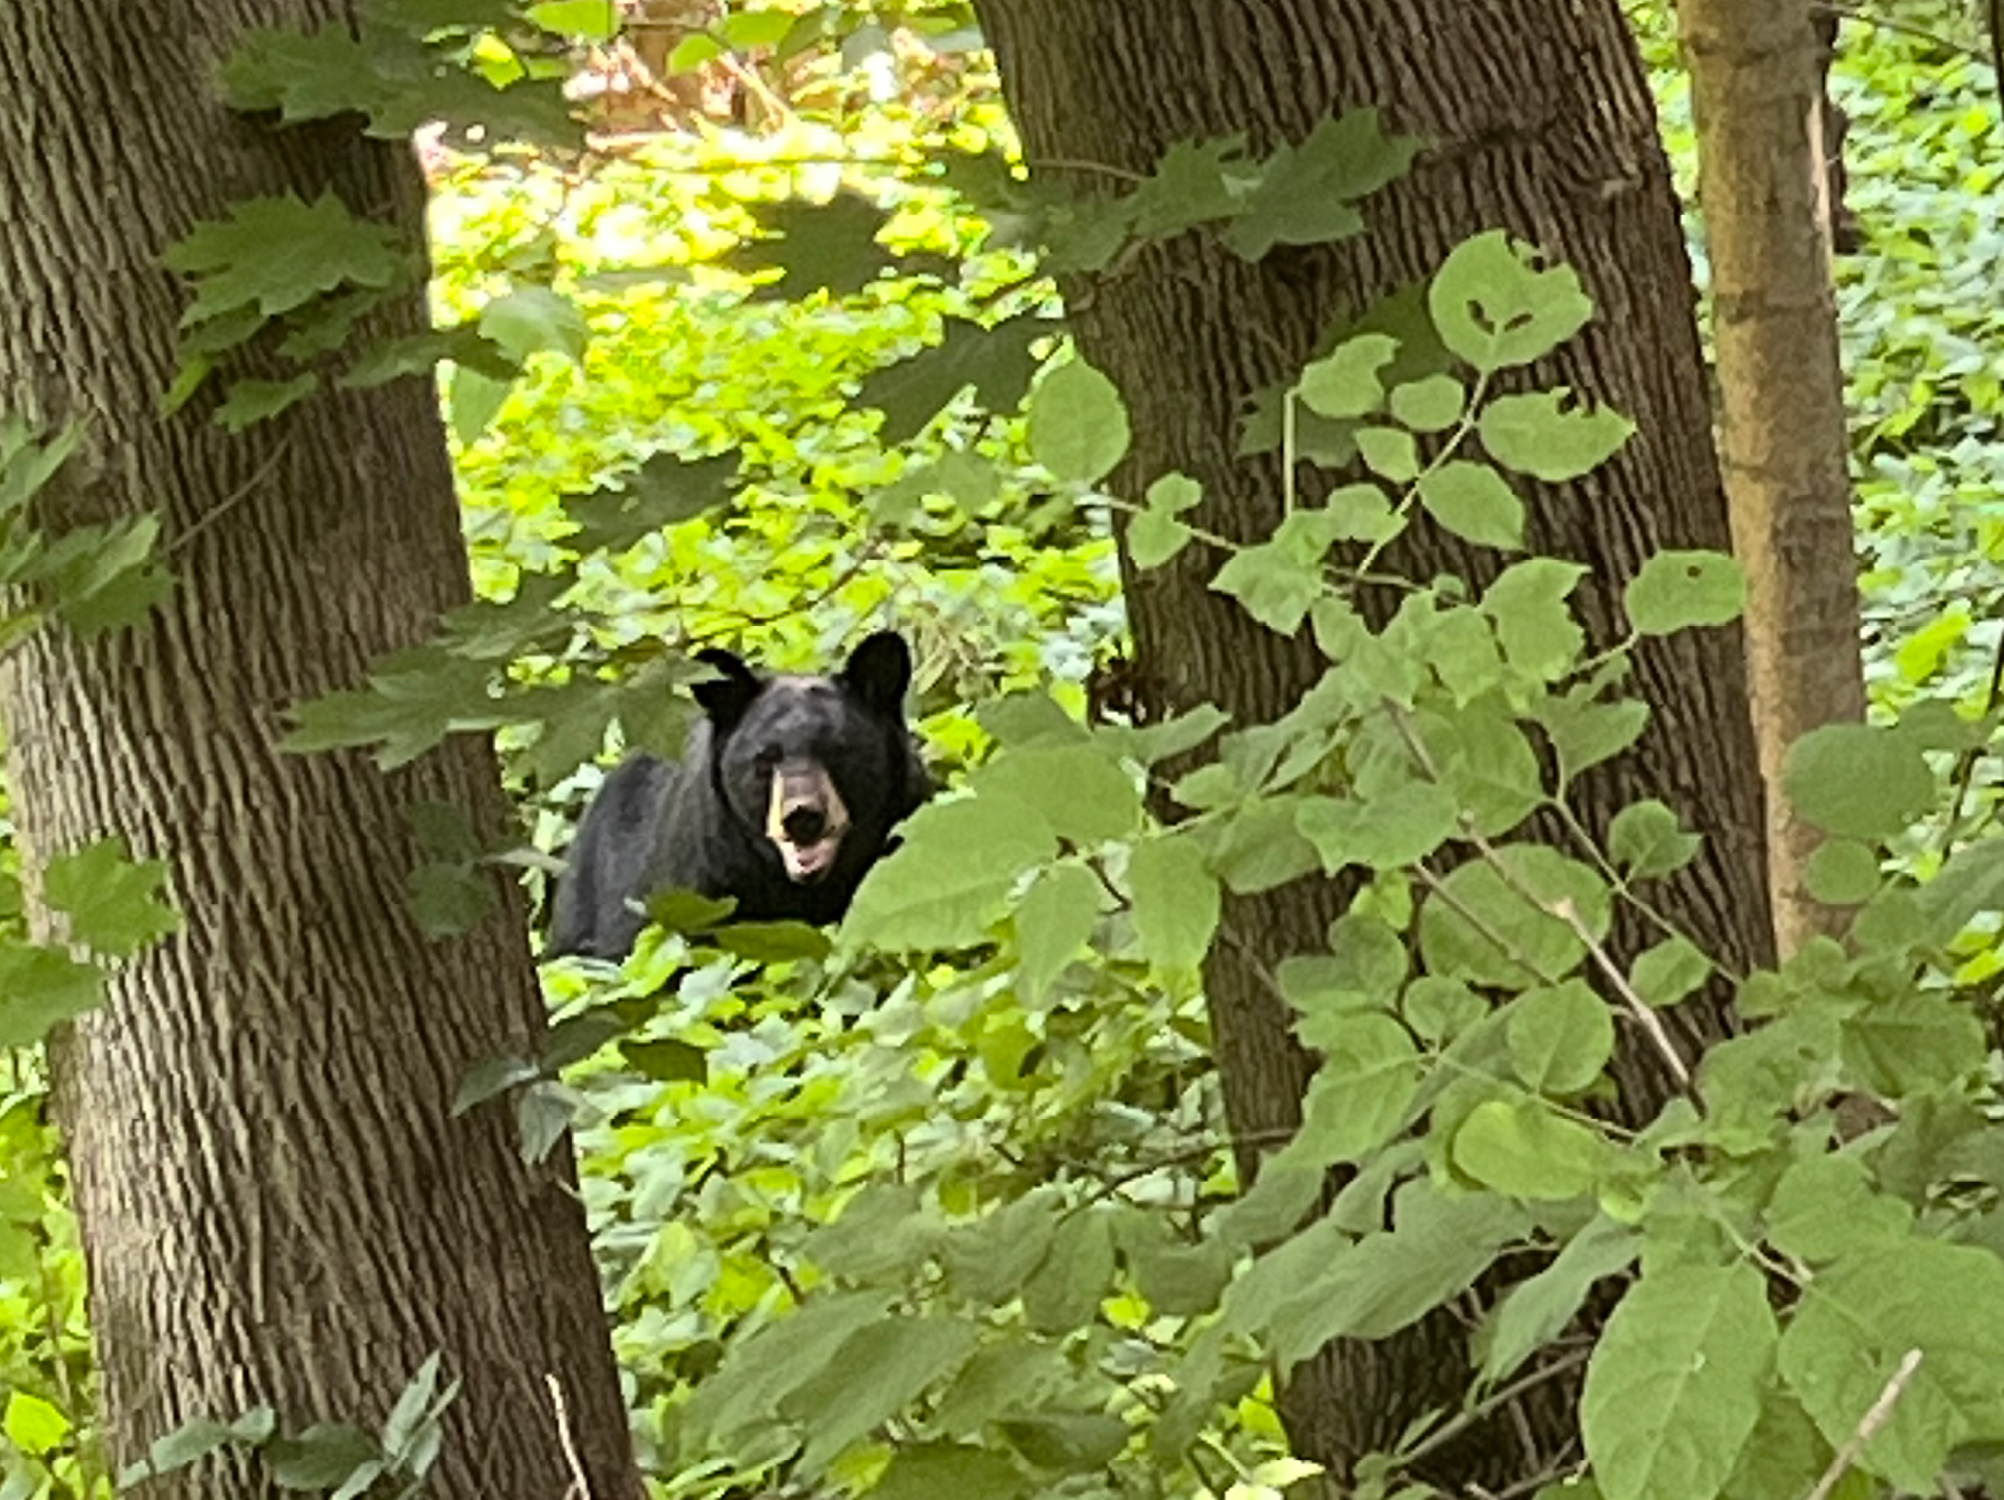 Daniel Looby's photo of a black bear outside